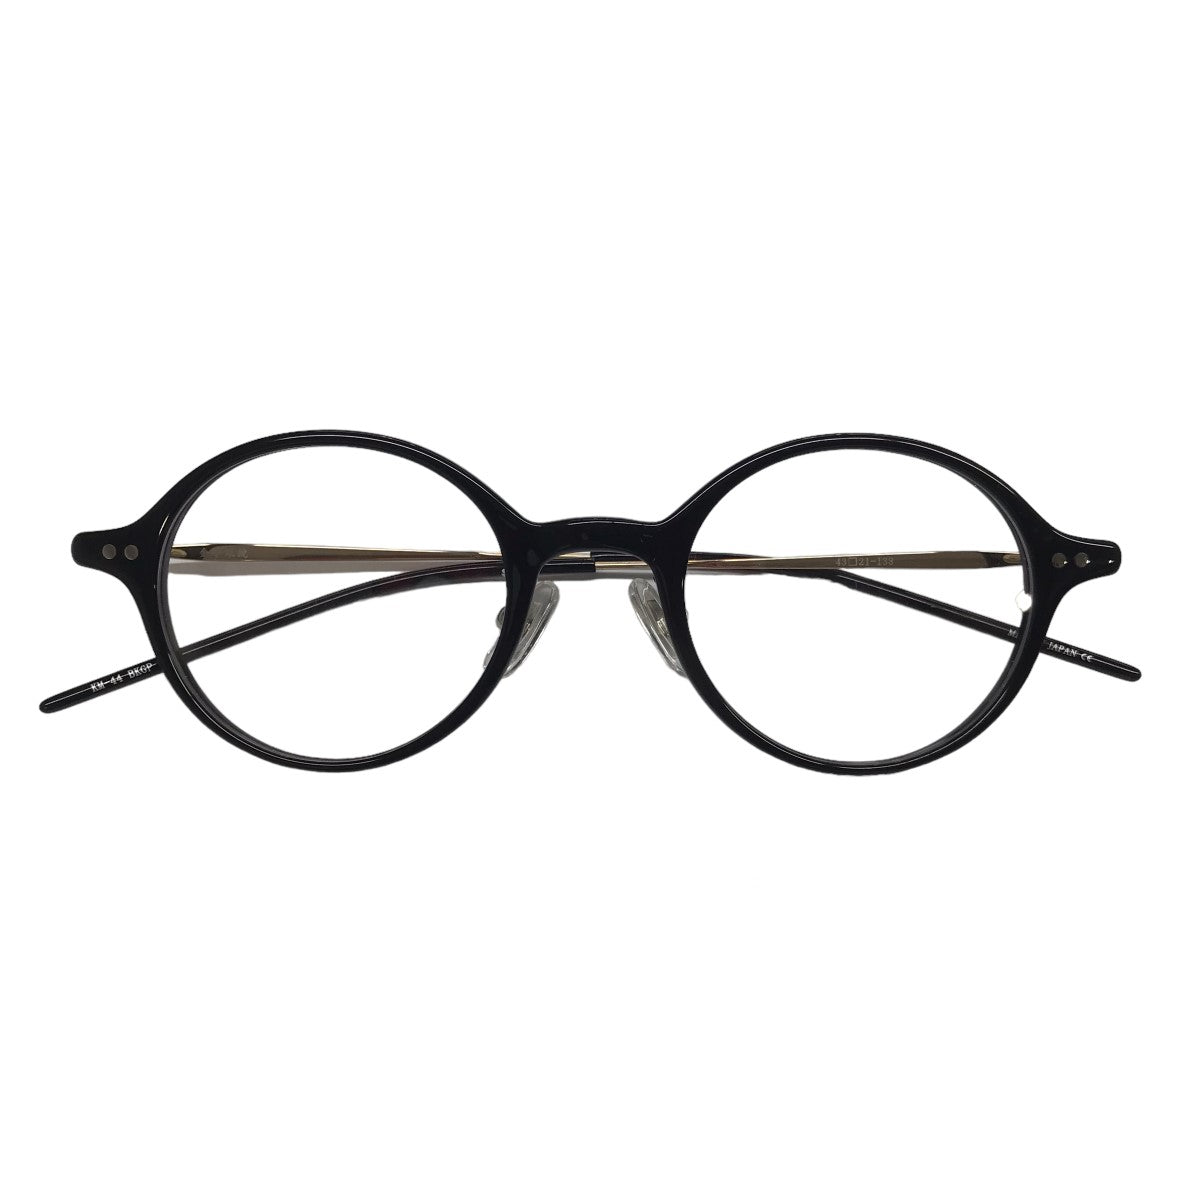 金子眼鏡(カネコメガネ) ラウンドフレーム眼鏡 メガネ